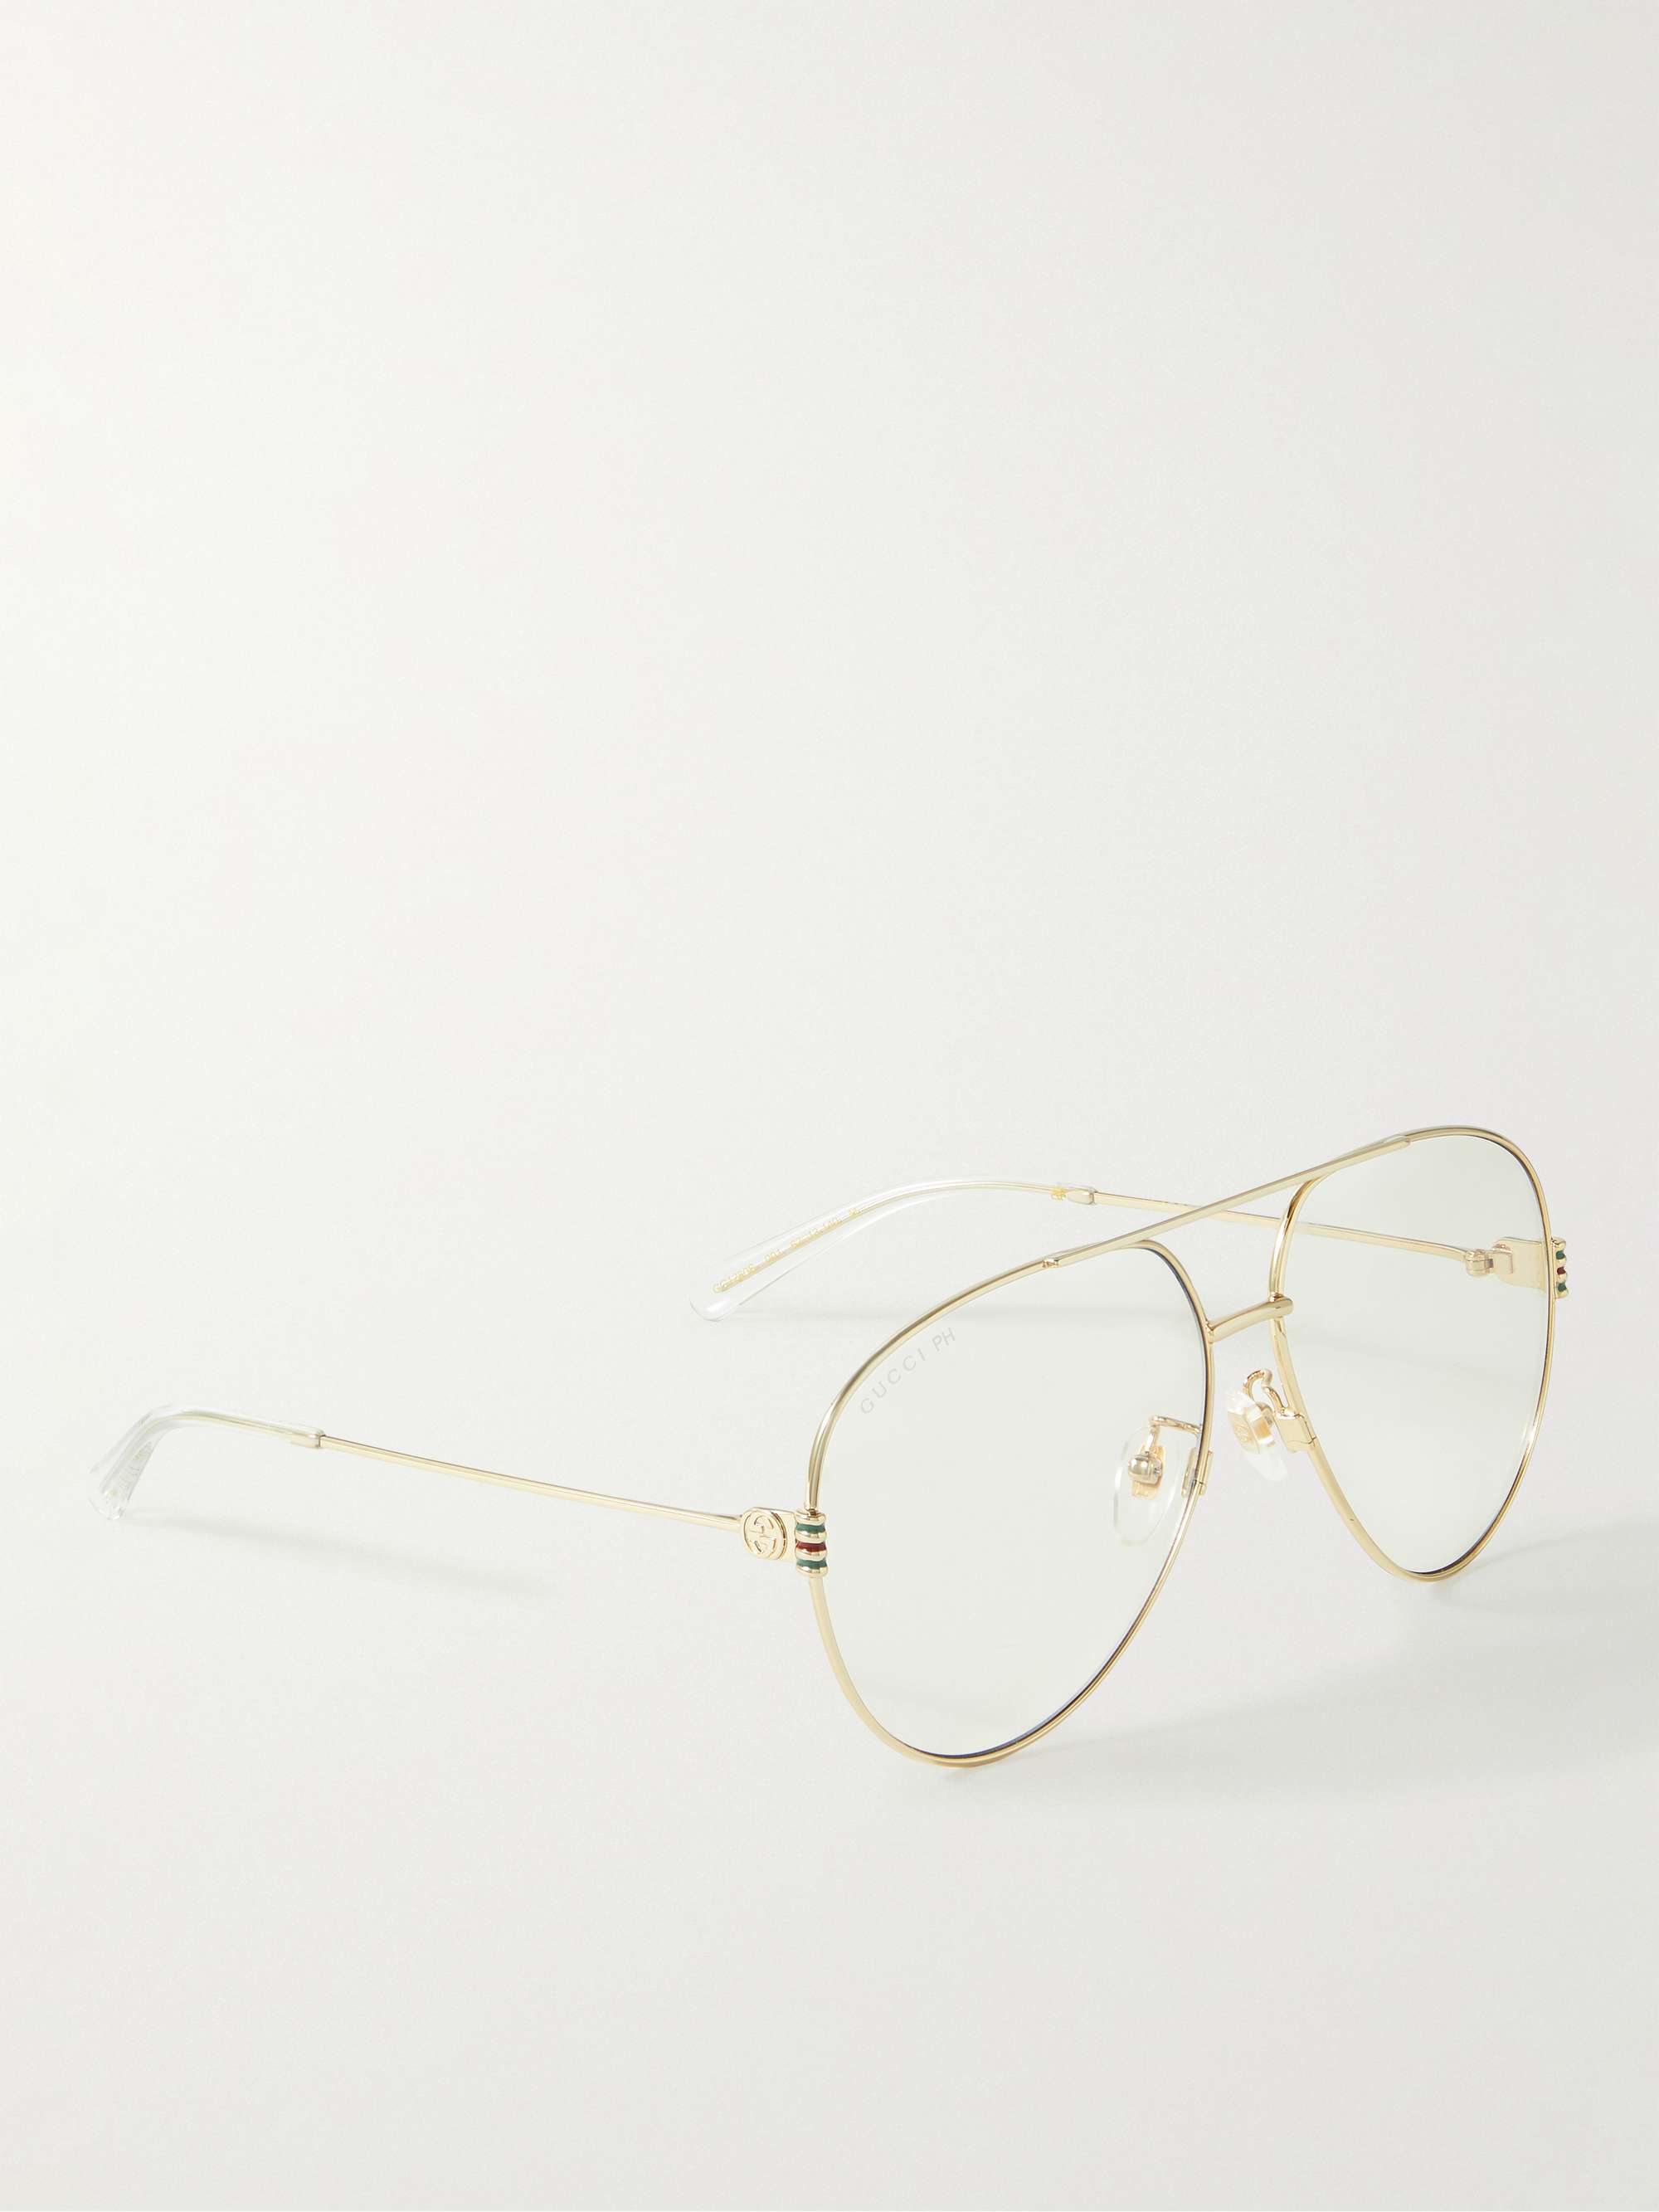 GUCCI EYEWEAR Aviator-Style Gold-Tone Sunglasses